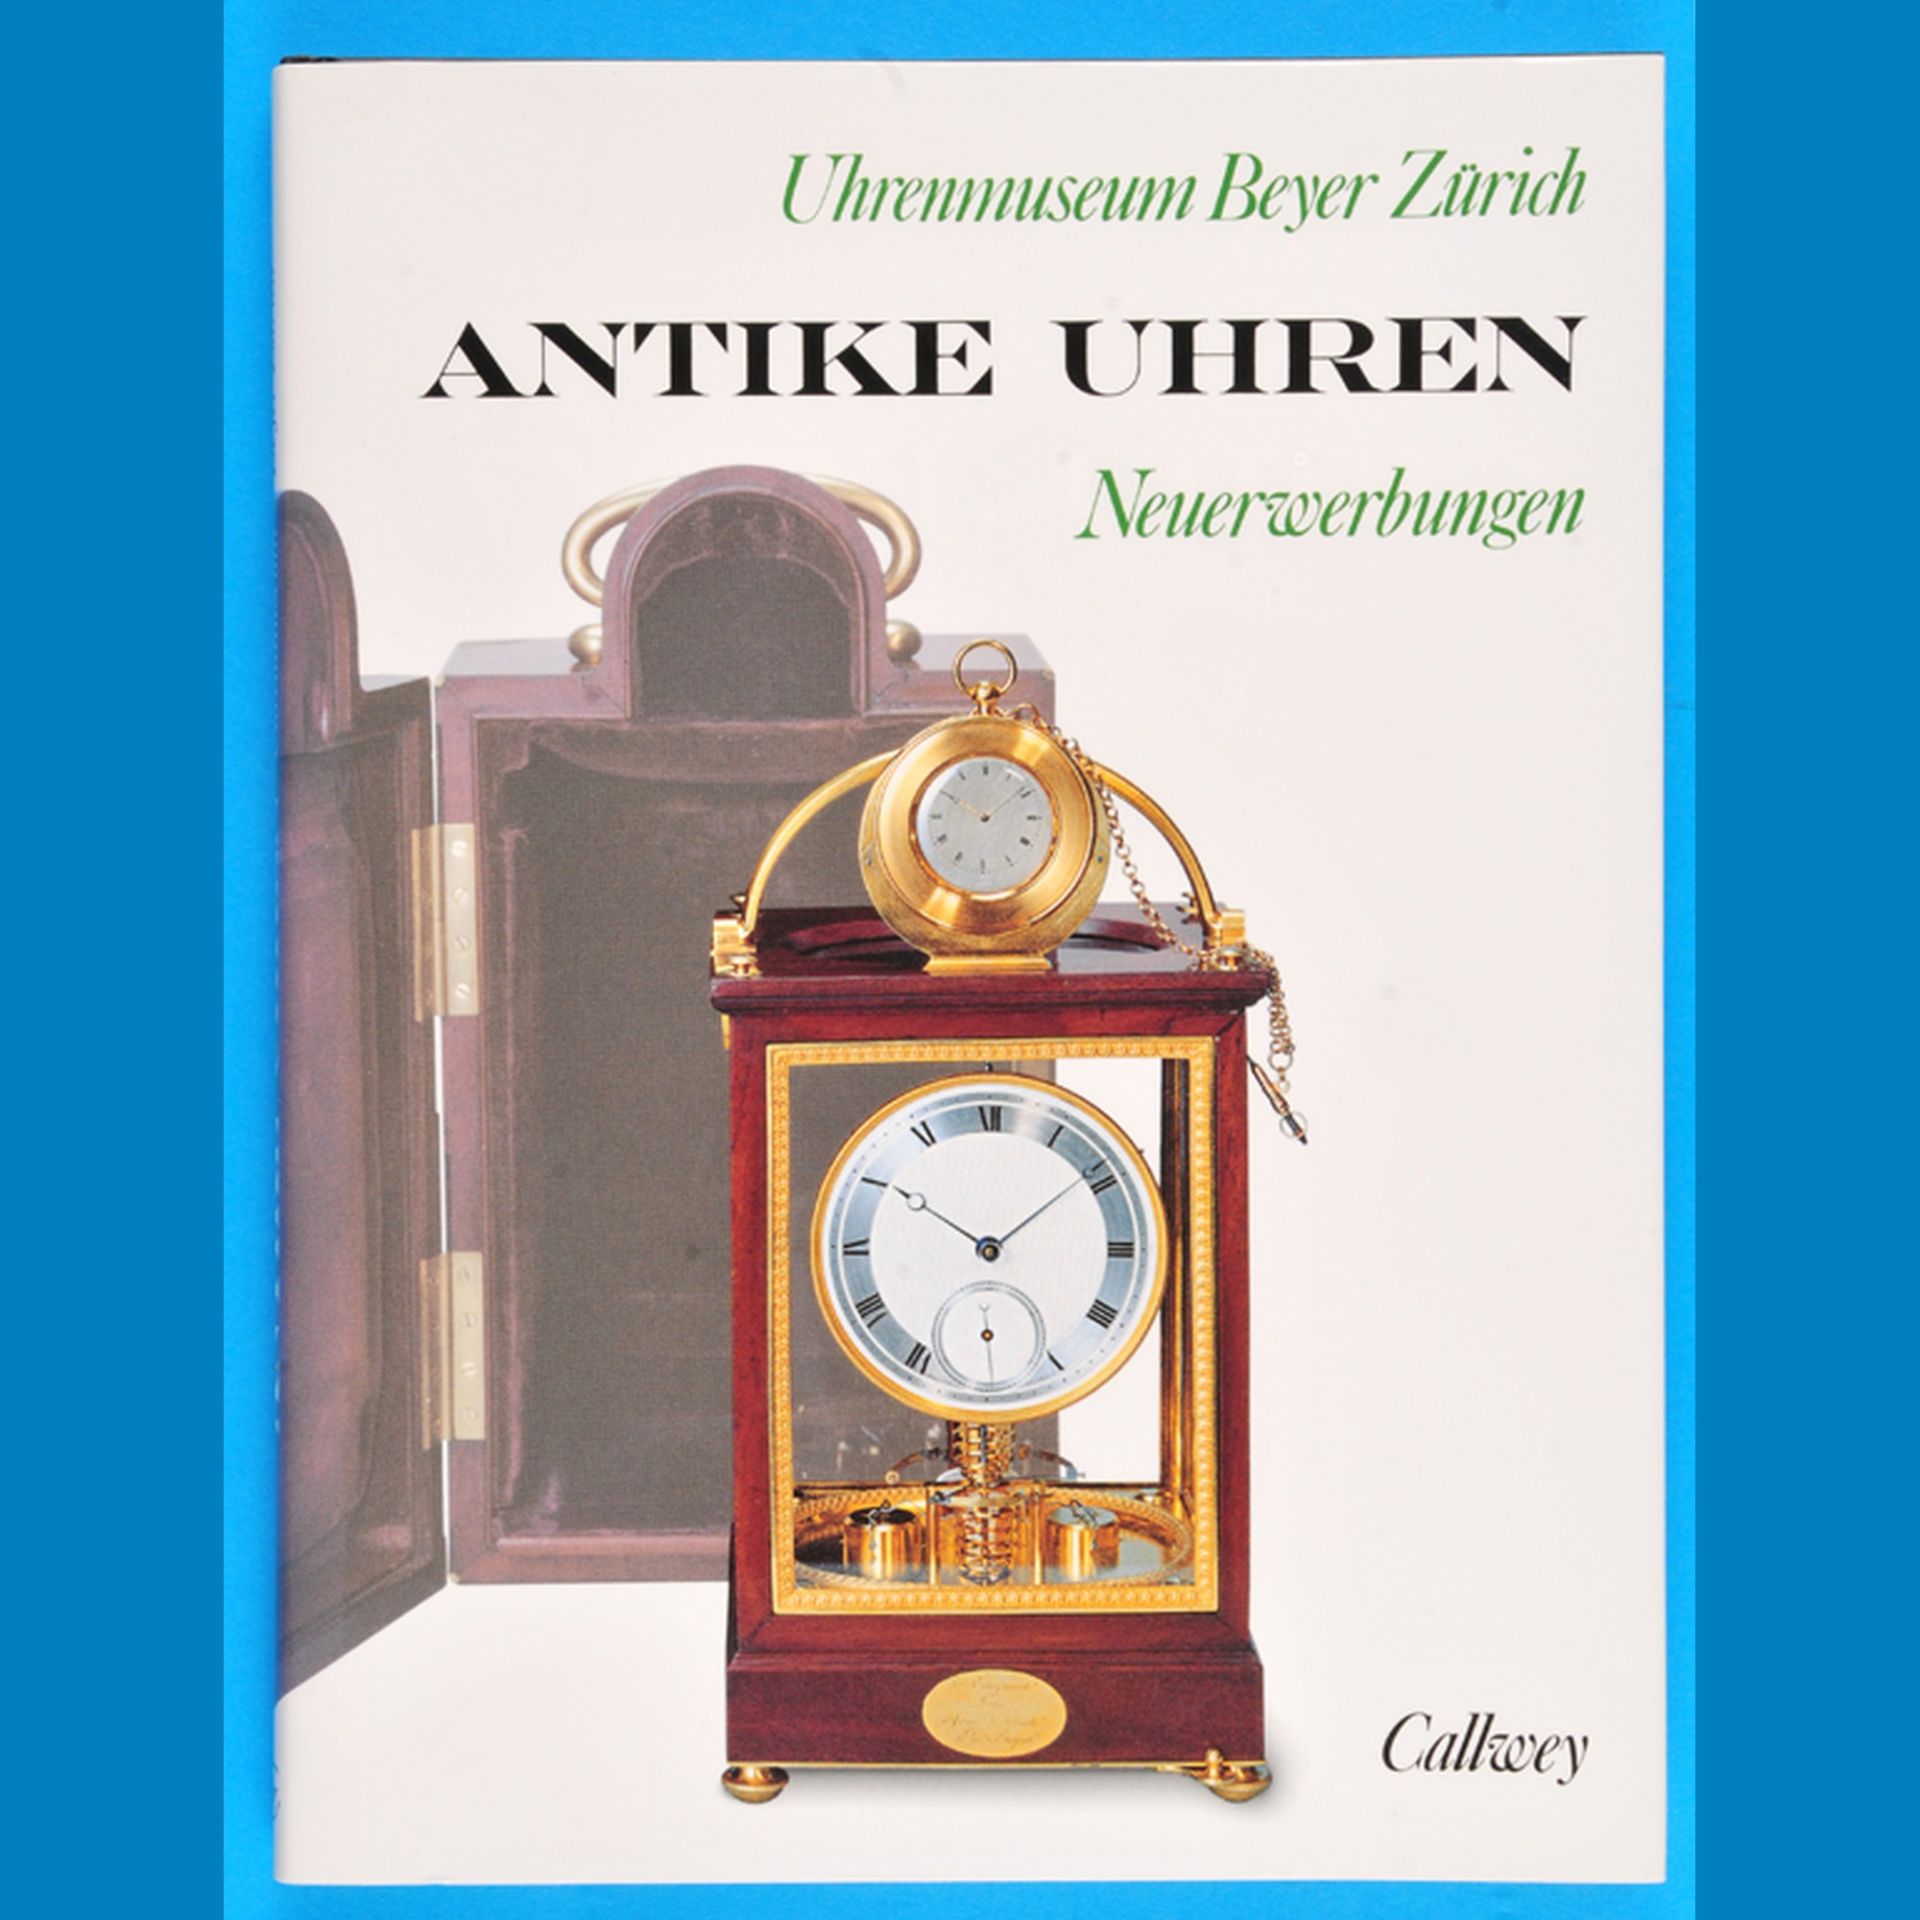 Uhrenmuseum Beyer, Antike Uhren – Neuerwerbungen, 1996, auf 110 Seiten werden 48 Neuerwerbungen mit